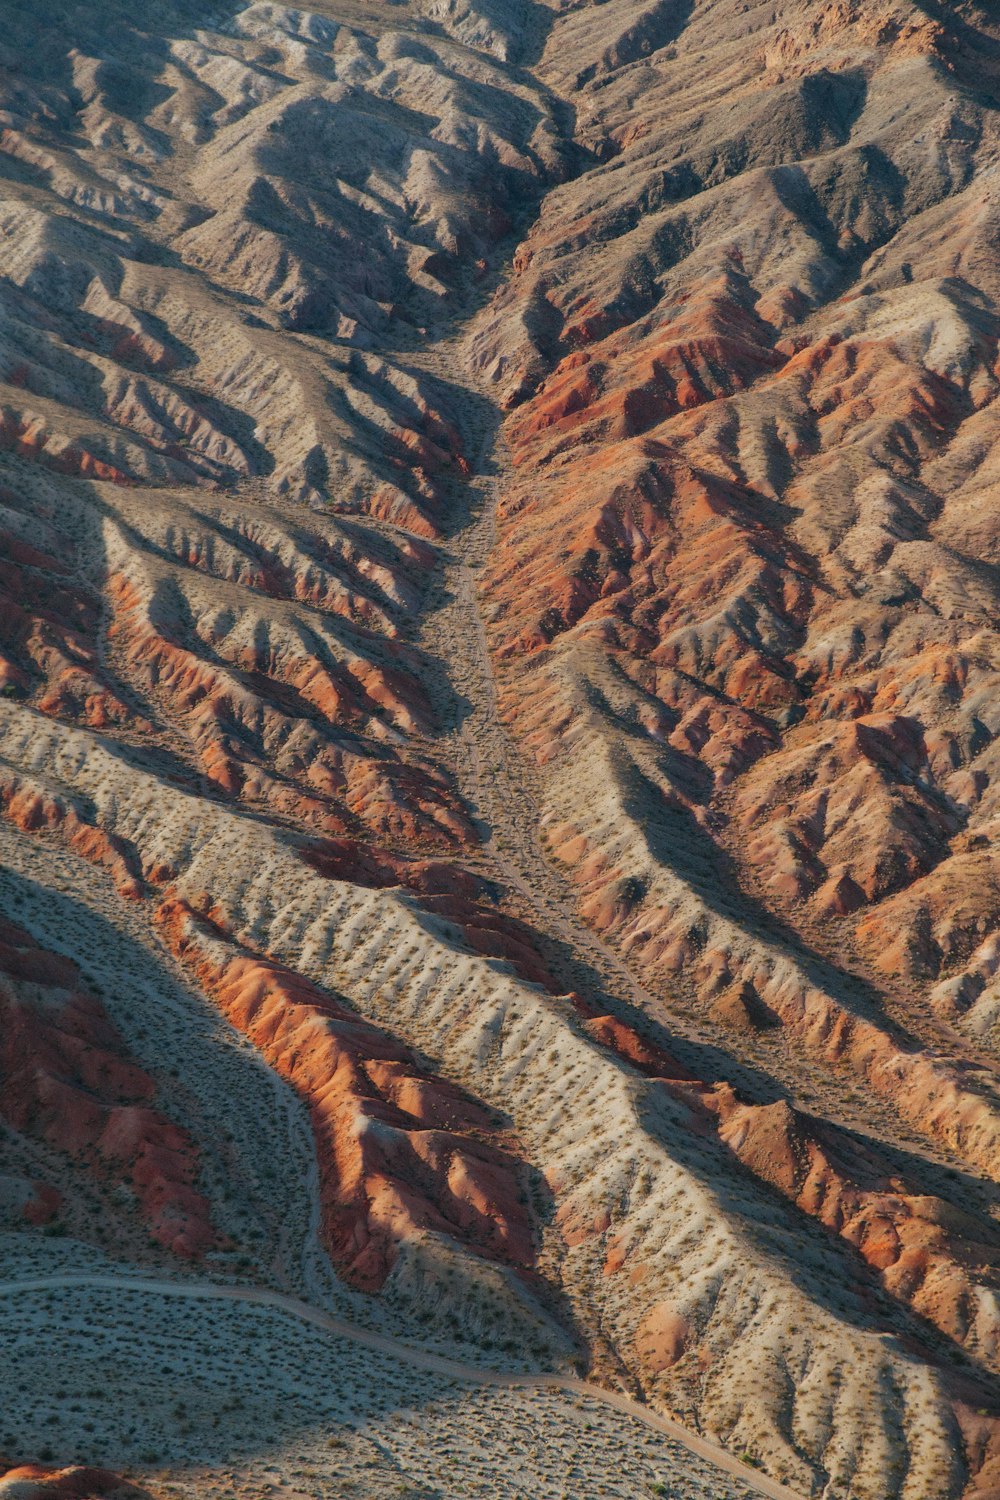 Fotografie aus der Vogelperspektive der Brown Mountains